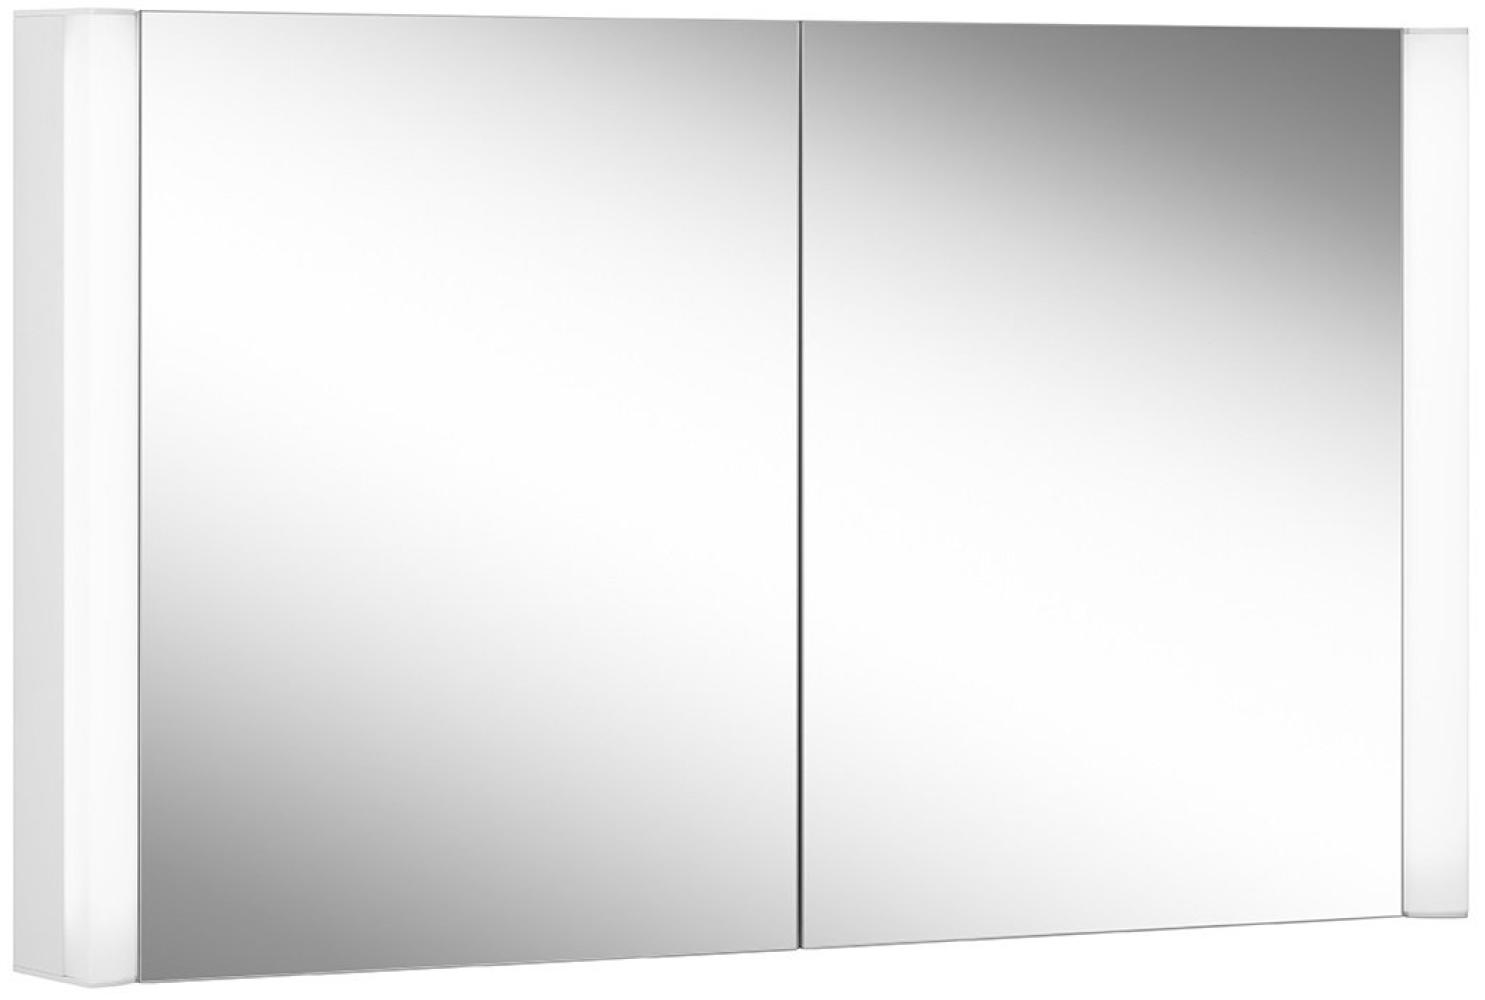 Schneider EASY Line Superior LED Lichtspiegelschrank, 2 Doppelspiegeltüren, 100x70x14cm, 175. 100, Ausführung: EU-Norm/Korpus weiss/3000K - 175. 100. 02. 0201 Bild 1